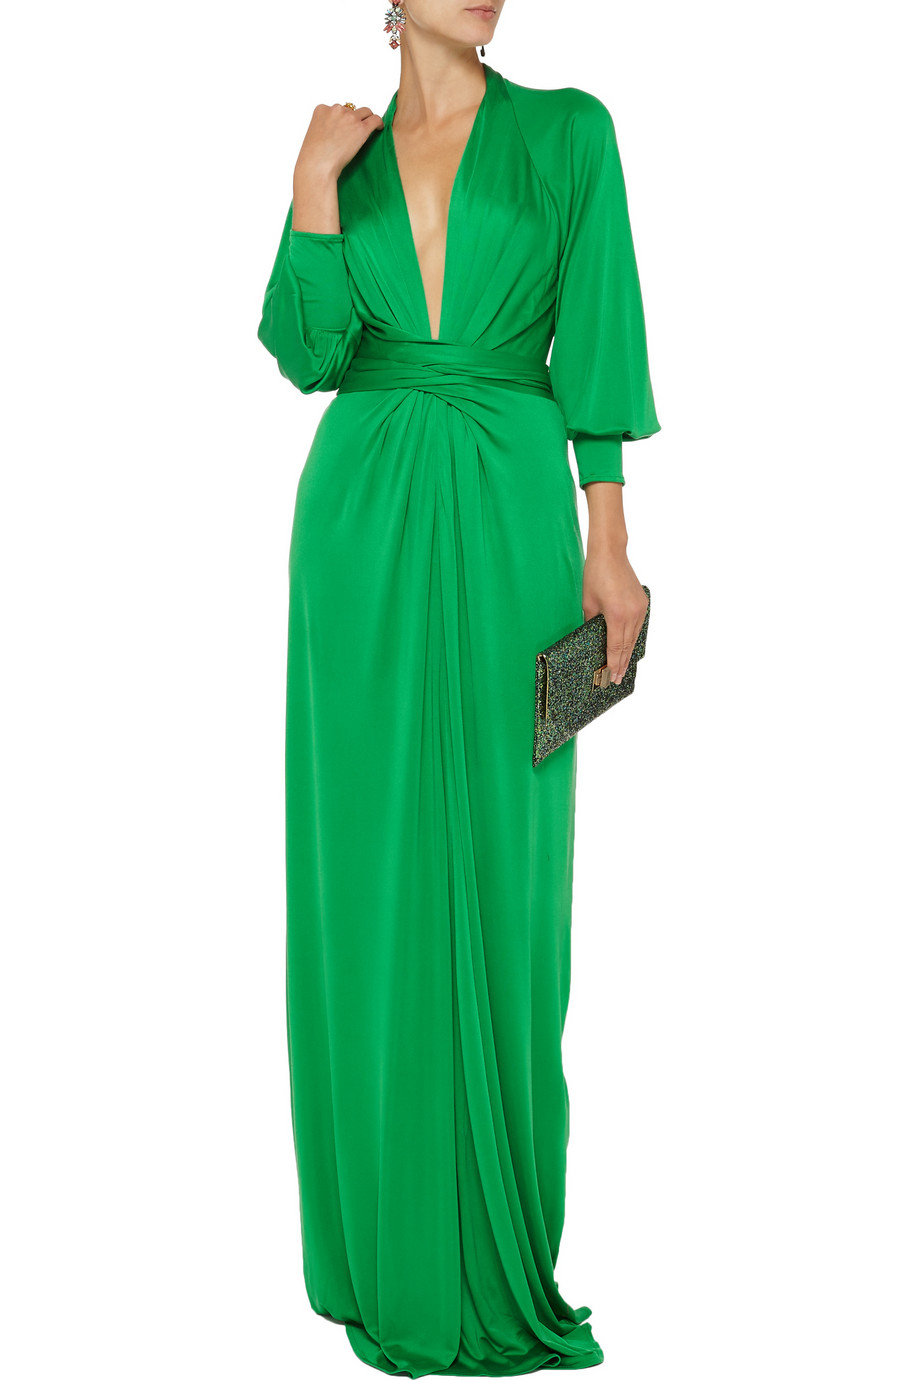 Issa Silk-jersey Maxi Dress in Green - Lyst